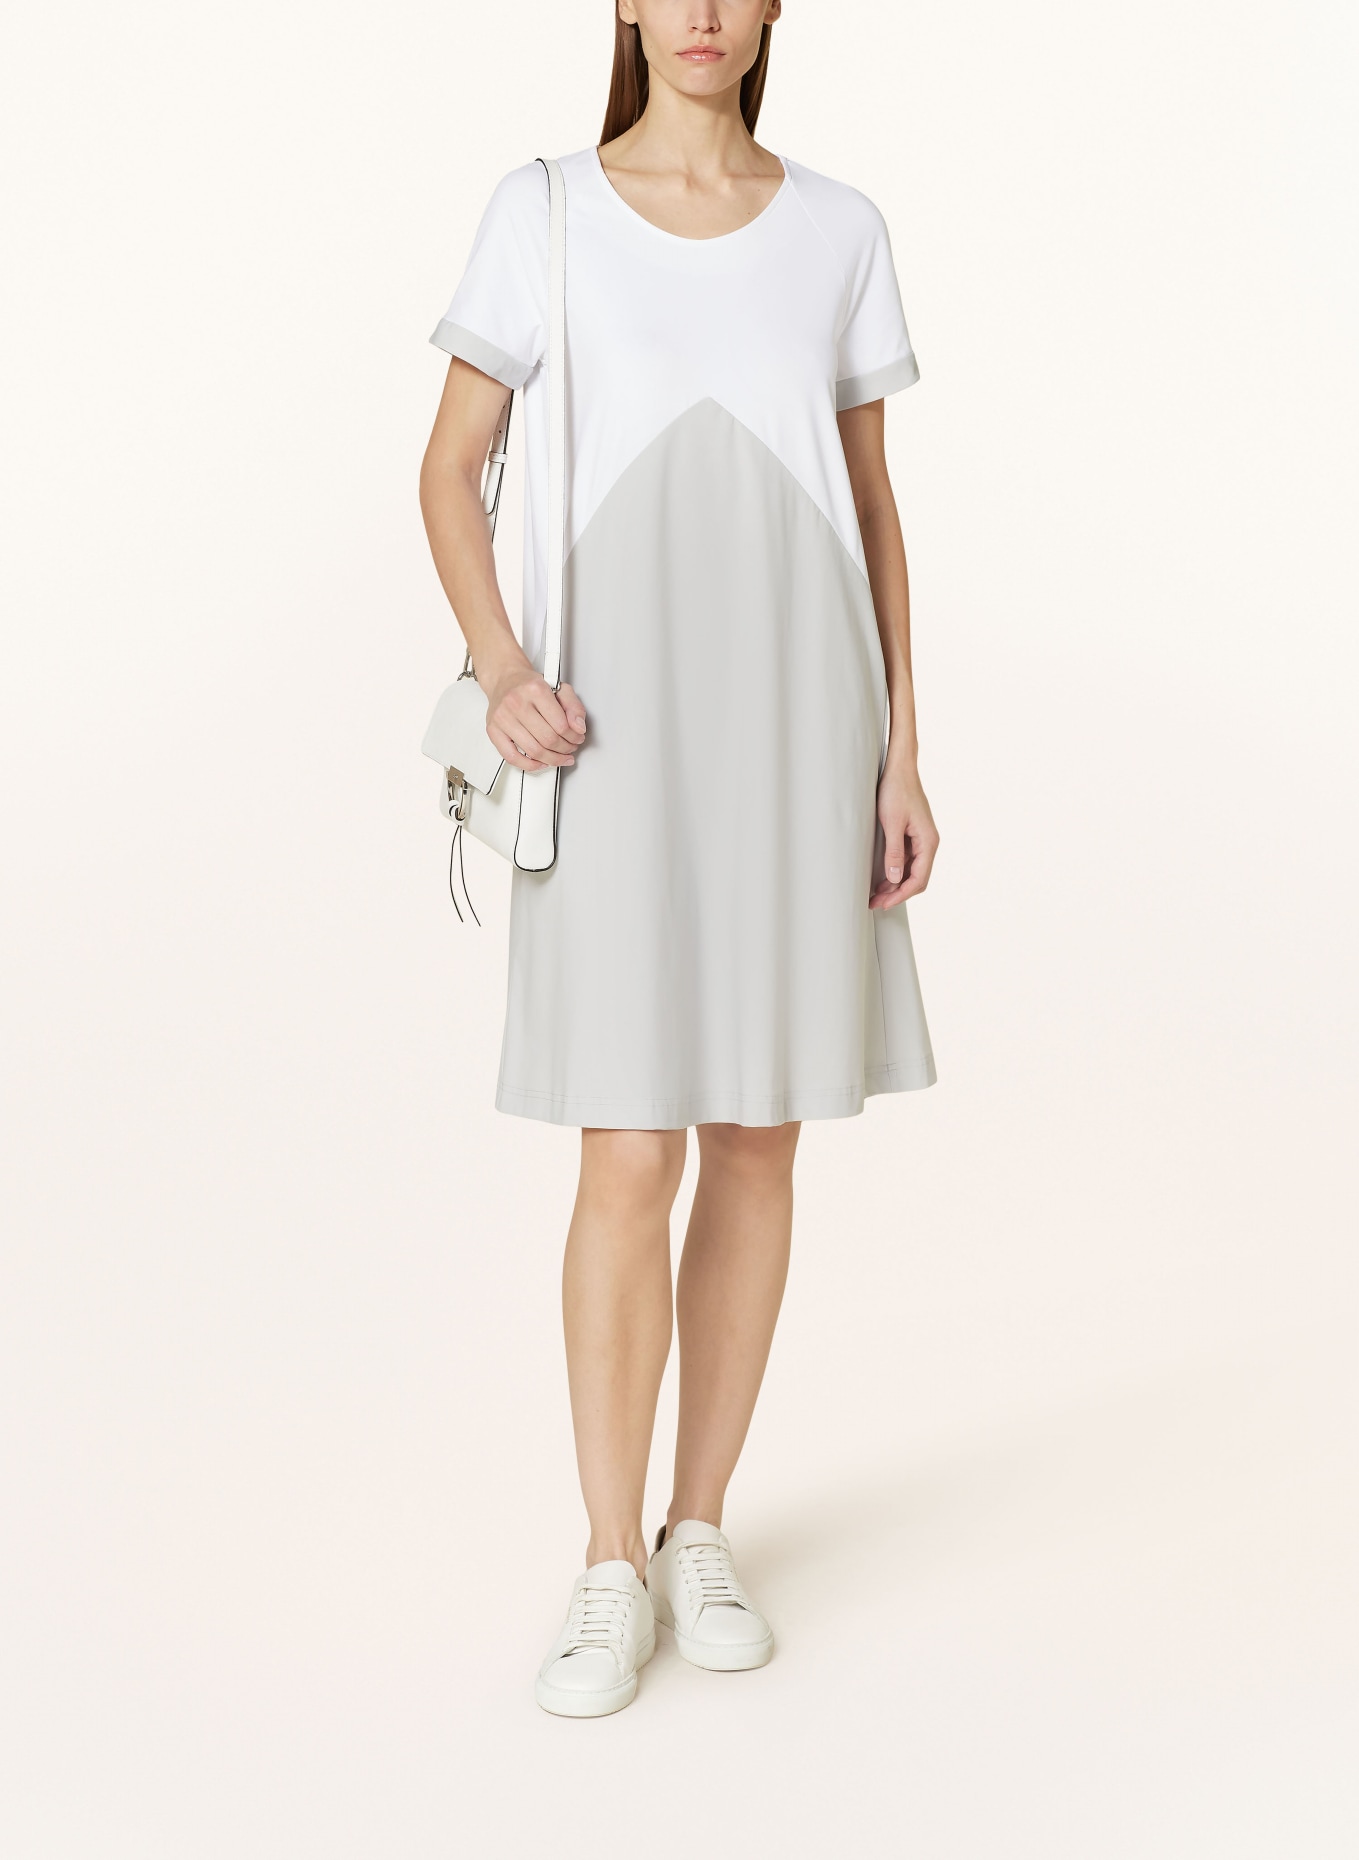 RAFFAELLO ROSSI Dress GOBINA in mixed materials, Color: WHITE/ LIGHT GRAY (Image 2)